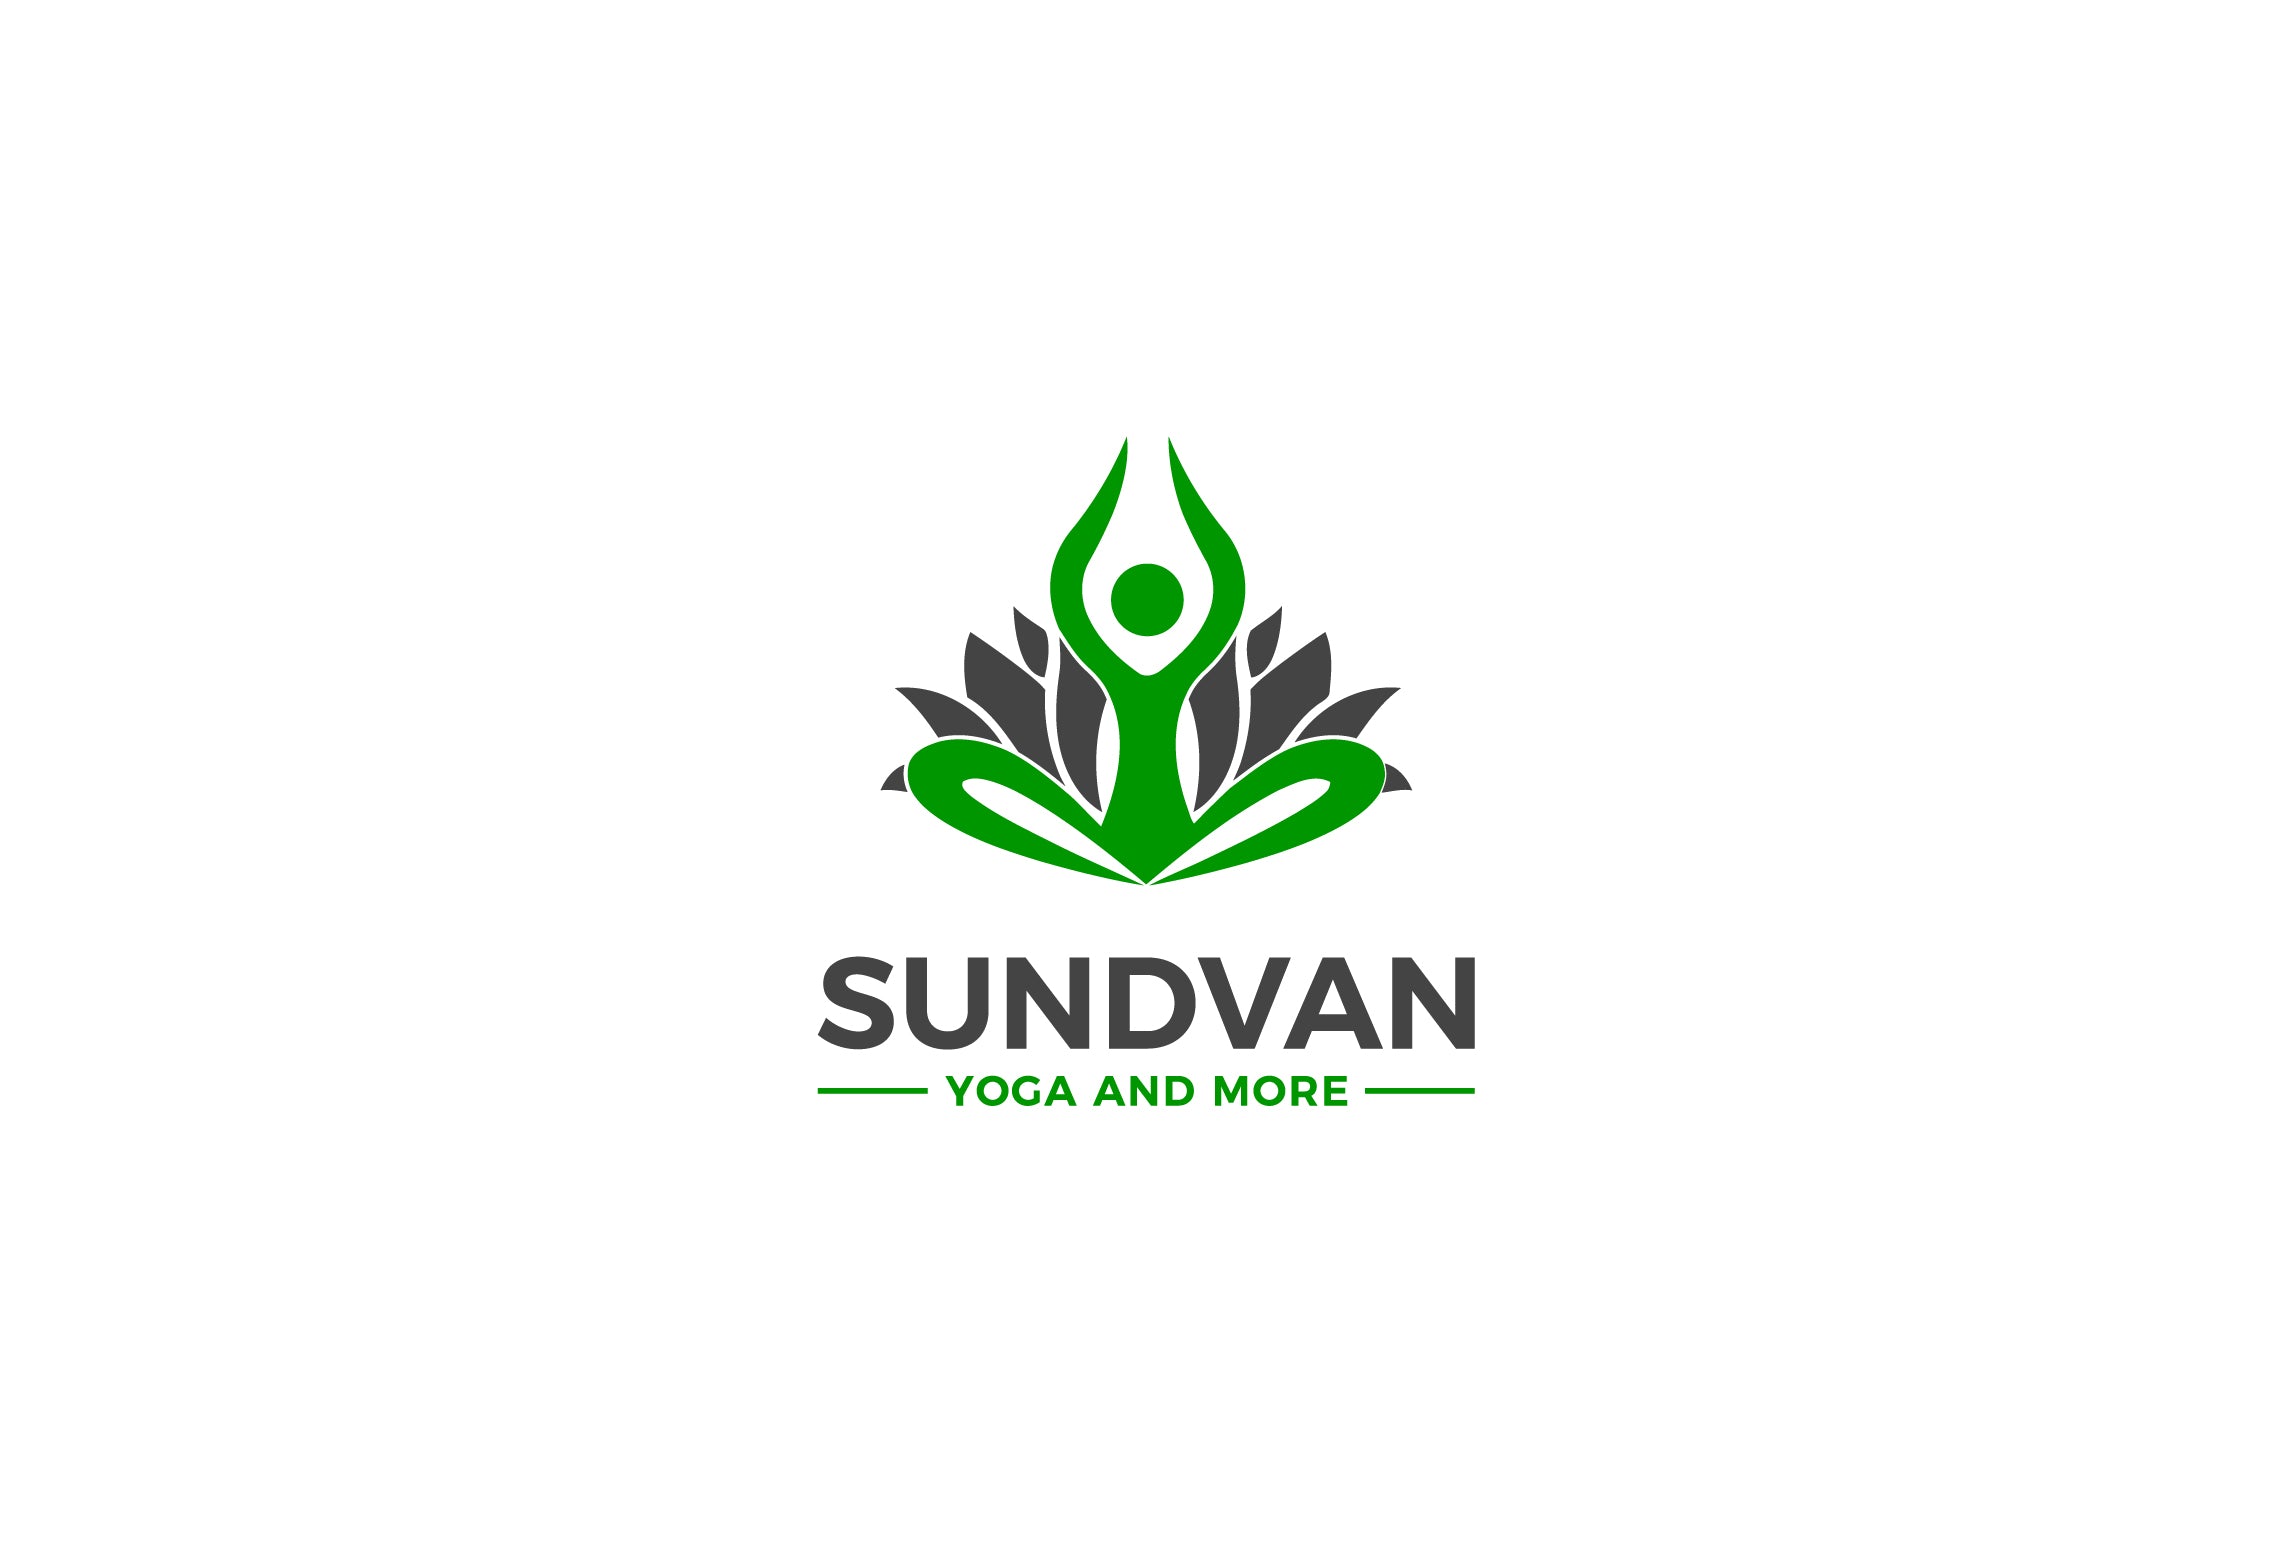 Sundvan Yoga